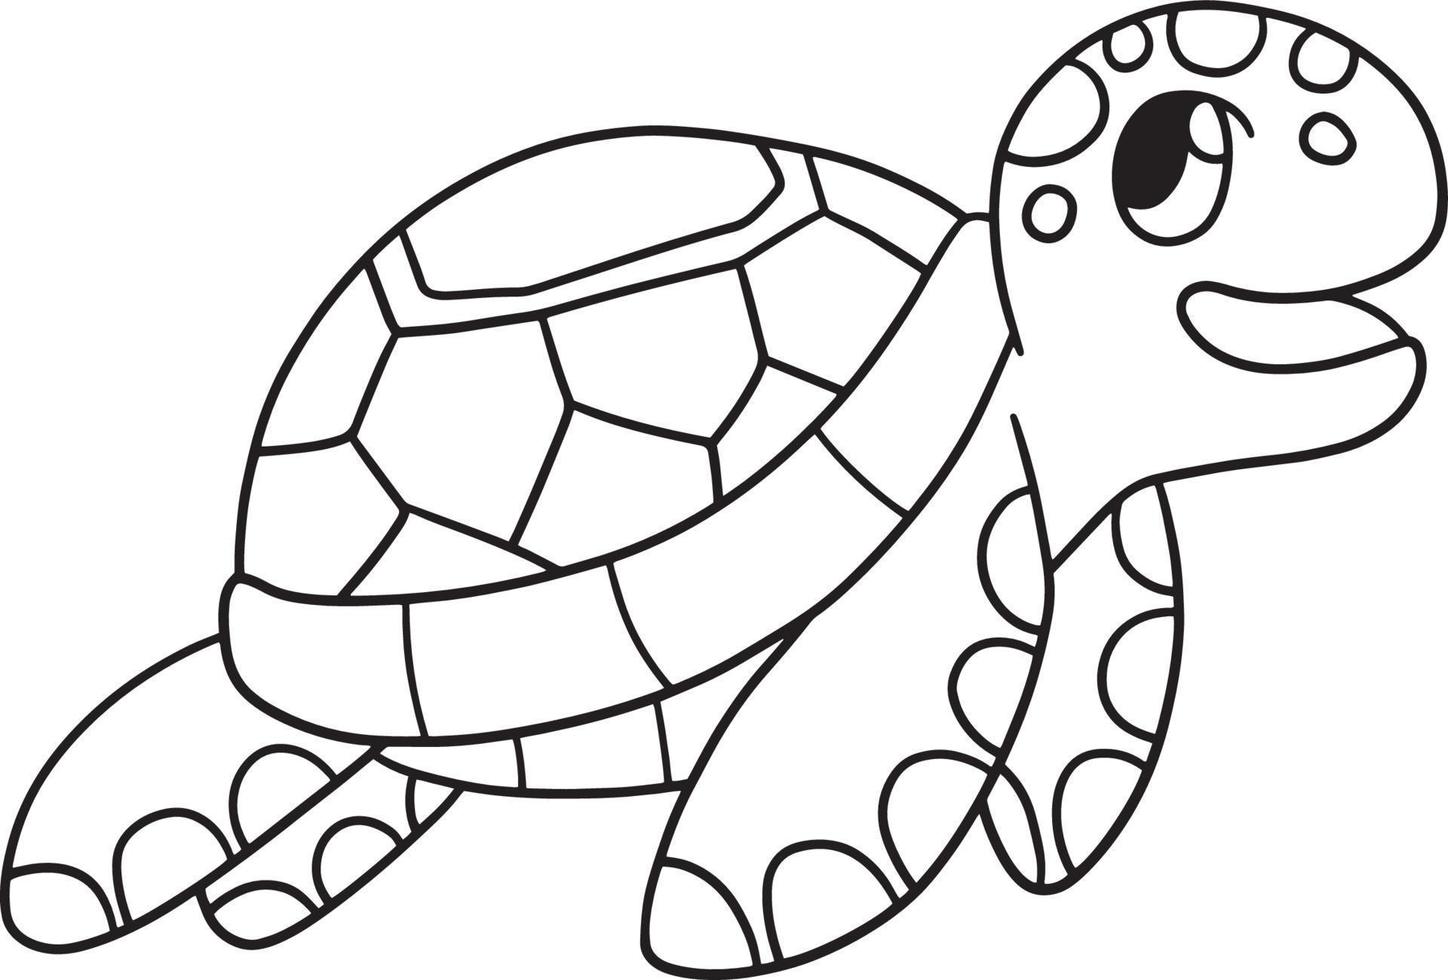 página para colorear aislada de tortugas marinas para niños 8208804 Vector  en Vecteezy